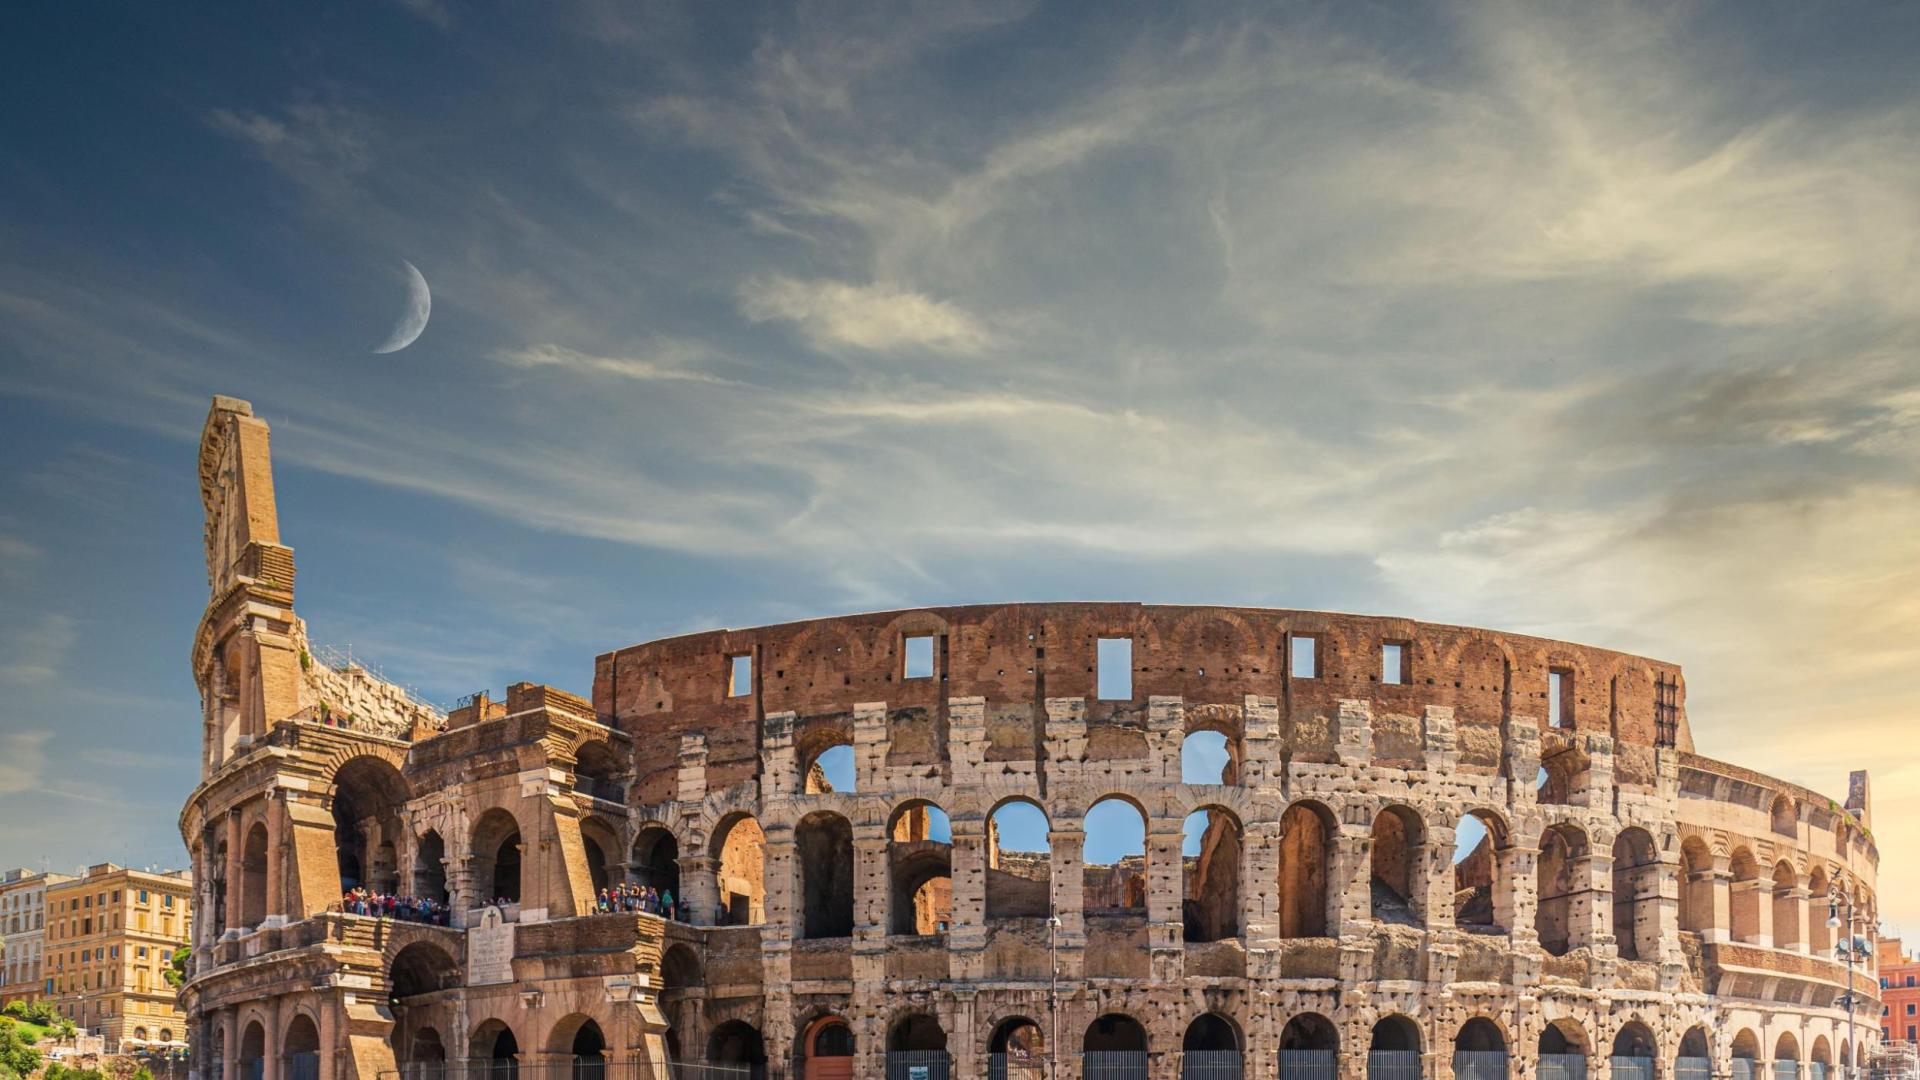 Het Colosseum in Rome, een iconisch oud amfitheater.